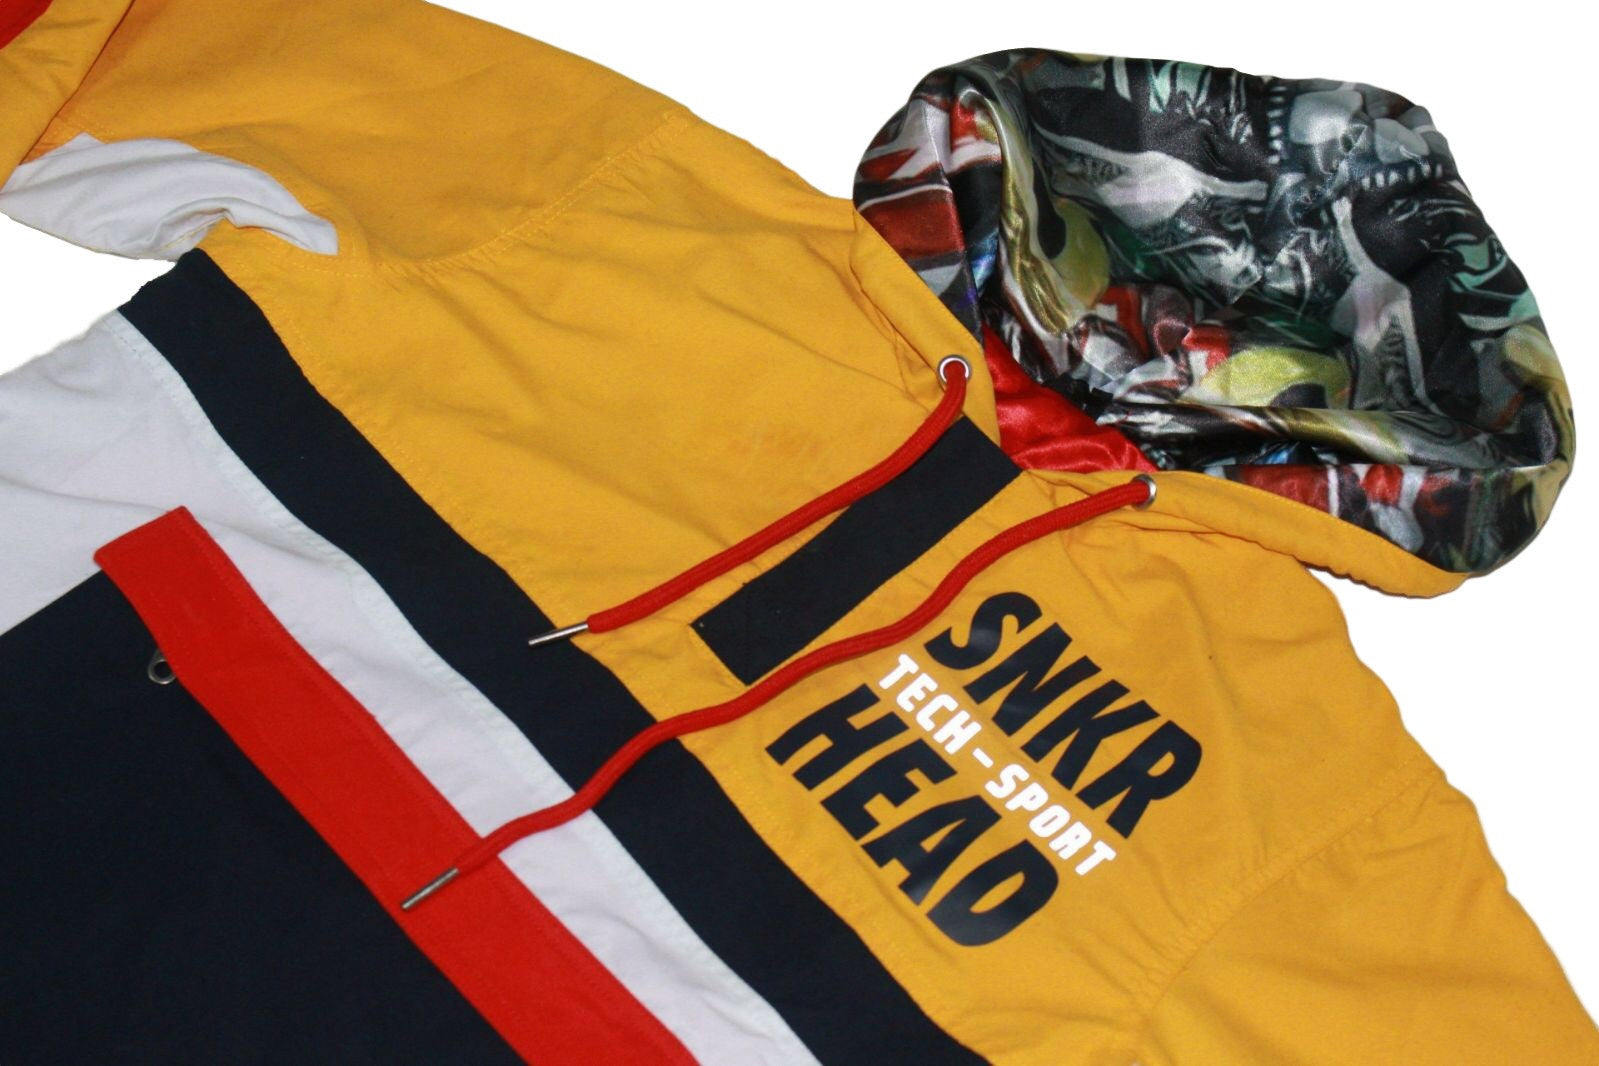 SNKR HEAD Tech-Sport International Windbreaker Jacket (yellow, white, red)